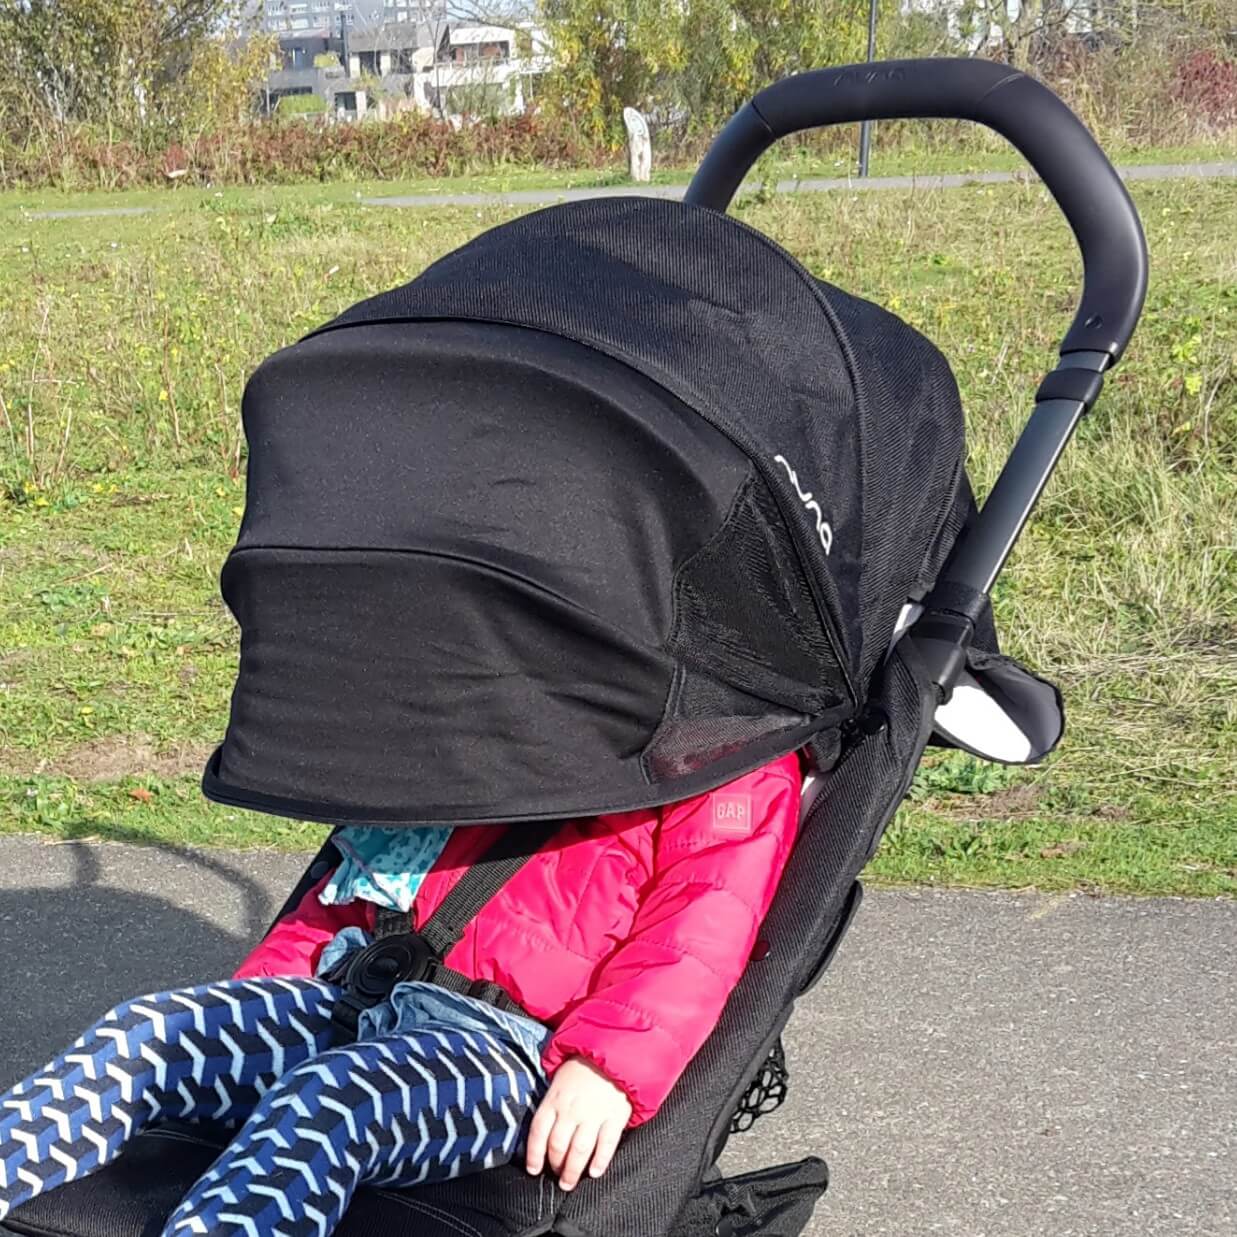 Hoogland kalf Bestuiven Review: welke lichtgewicht buggy is de beste? - Leuk met kids Leuk met kids